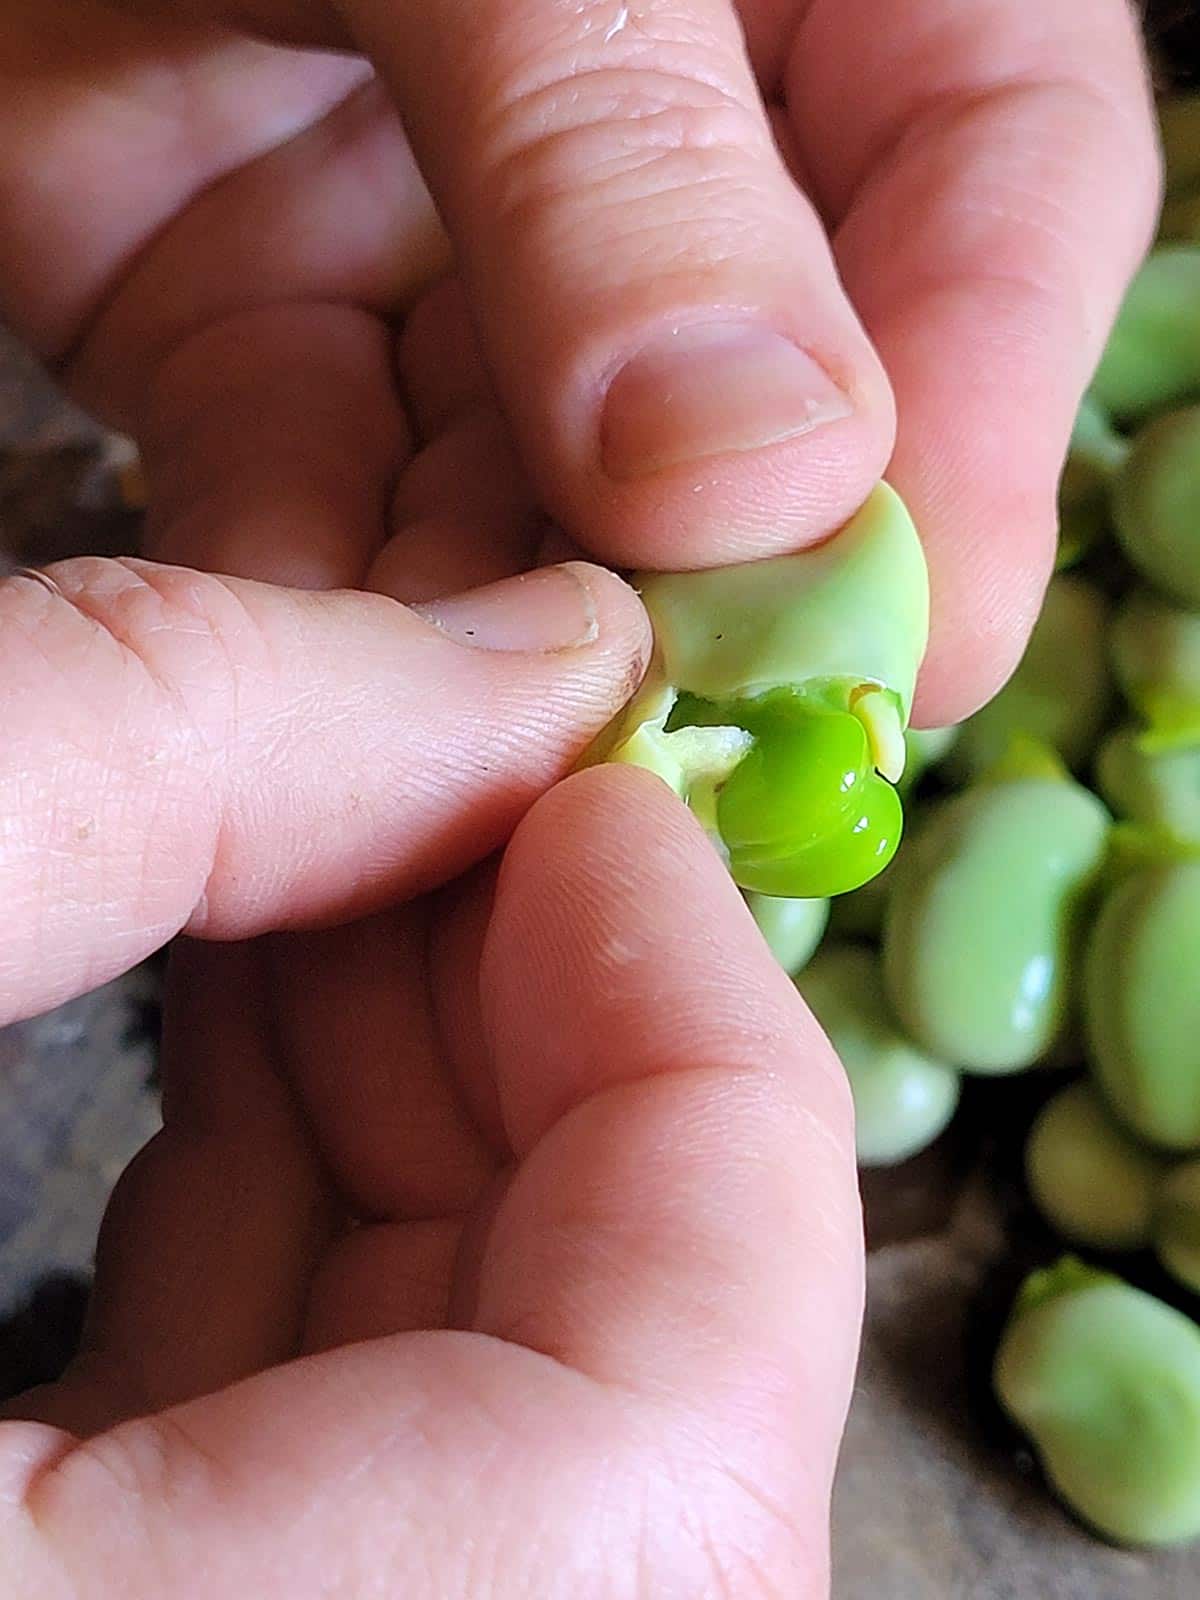 Removing the inner shell of fava beans